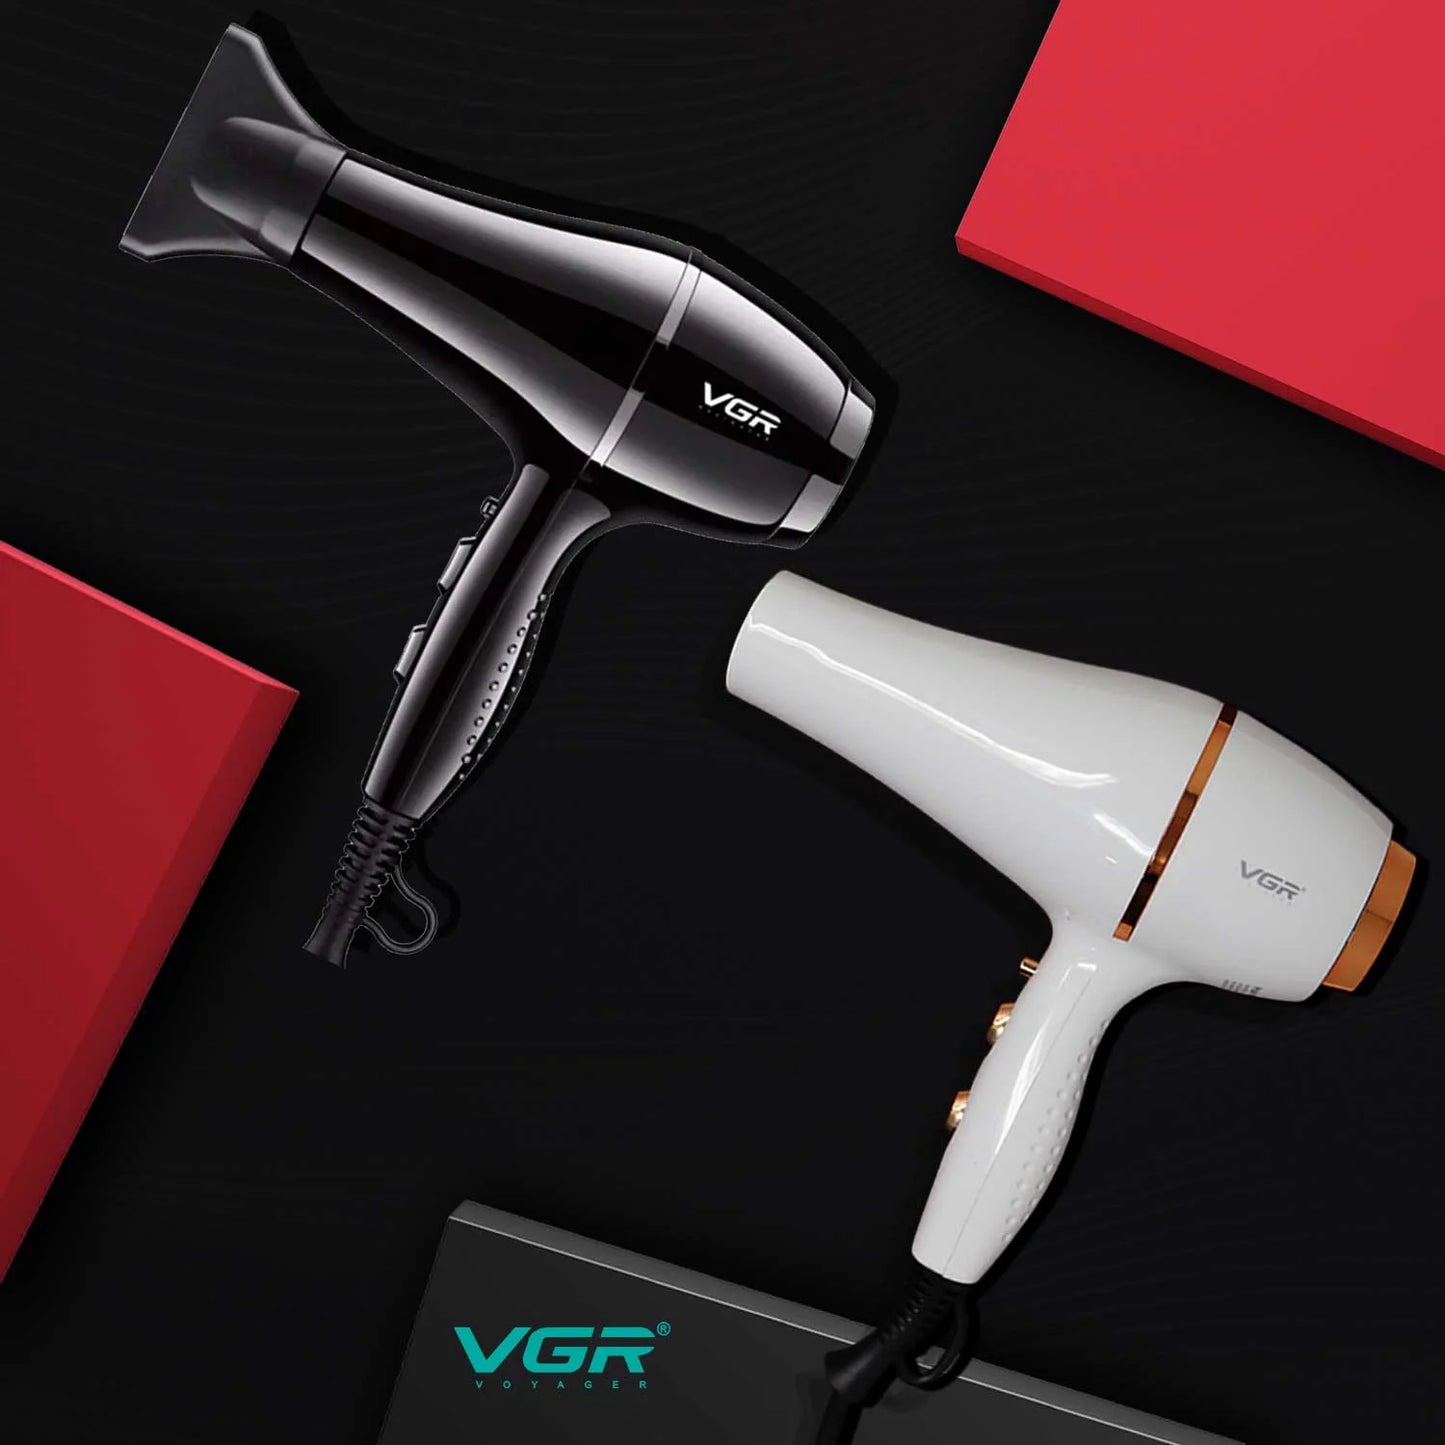 VGR V-414 Hair Dryer